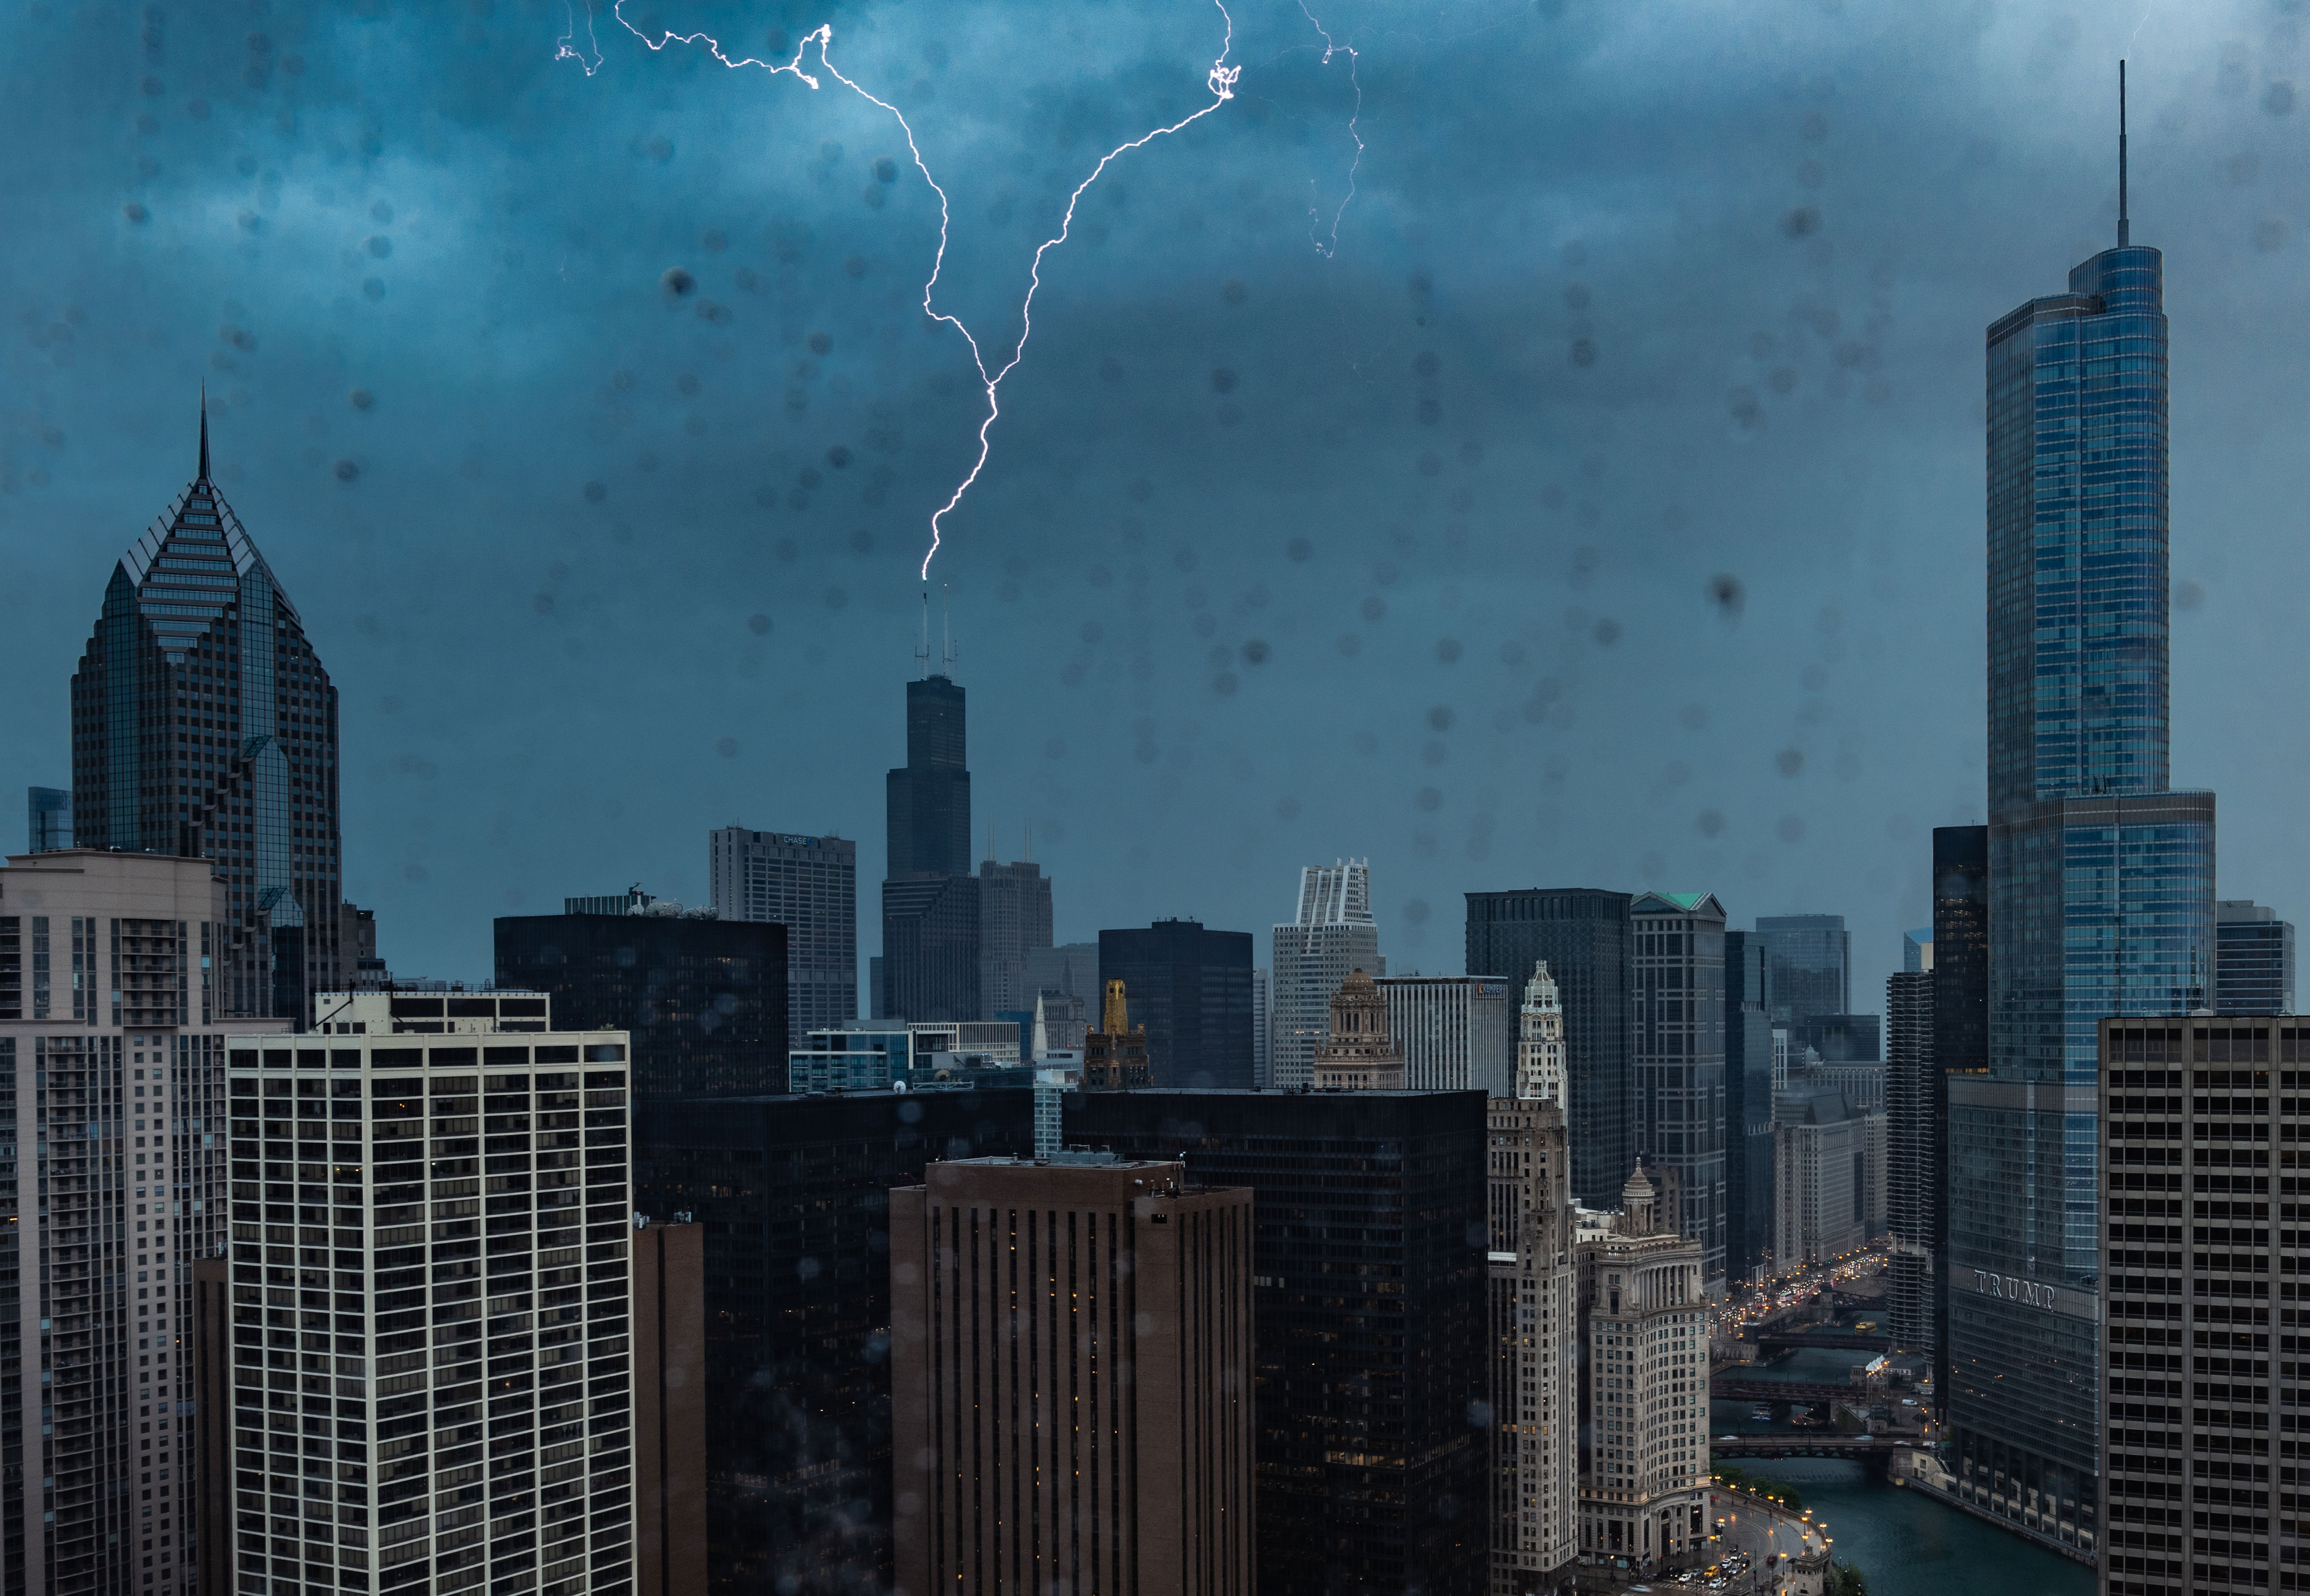 cronología de tiempo severo muestra cuándo podrían llegar las tormentas al área de chicago